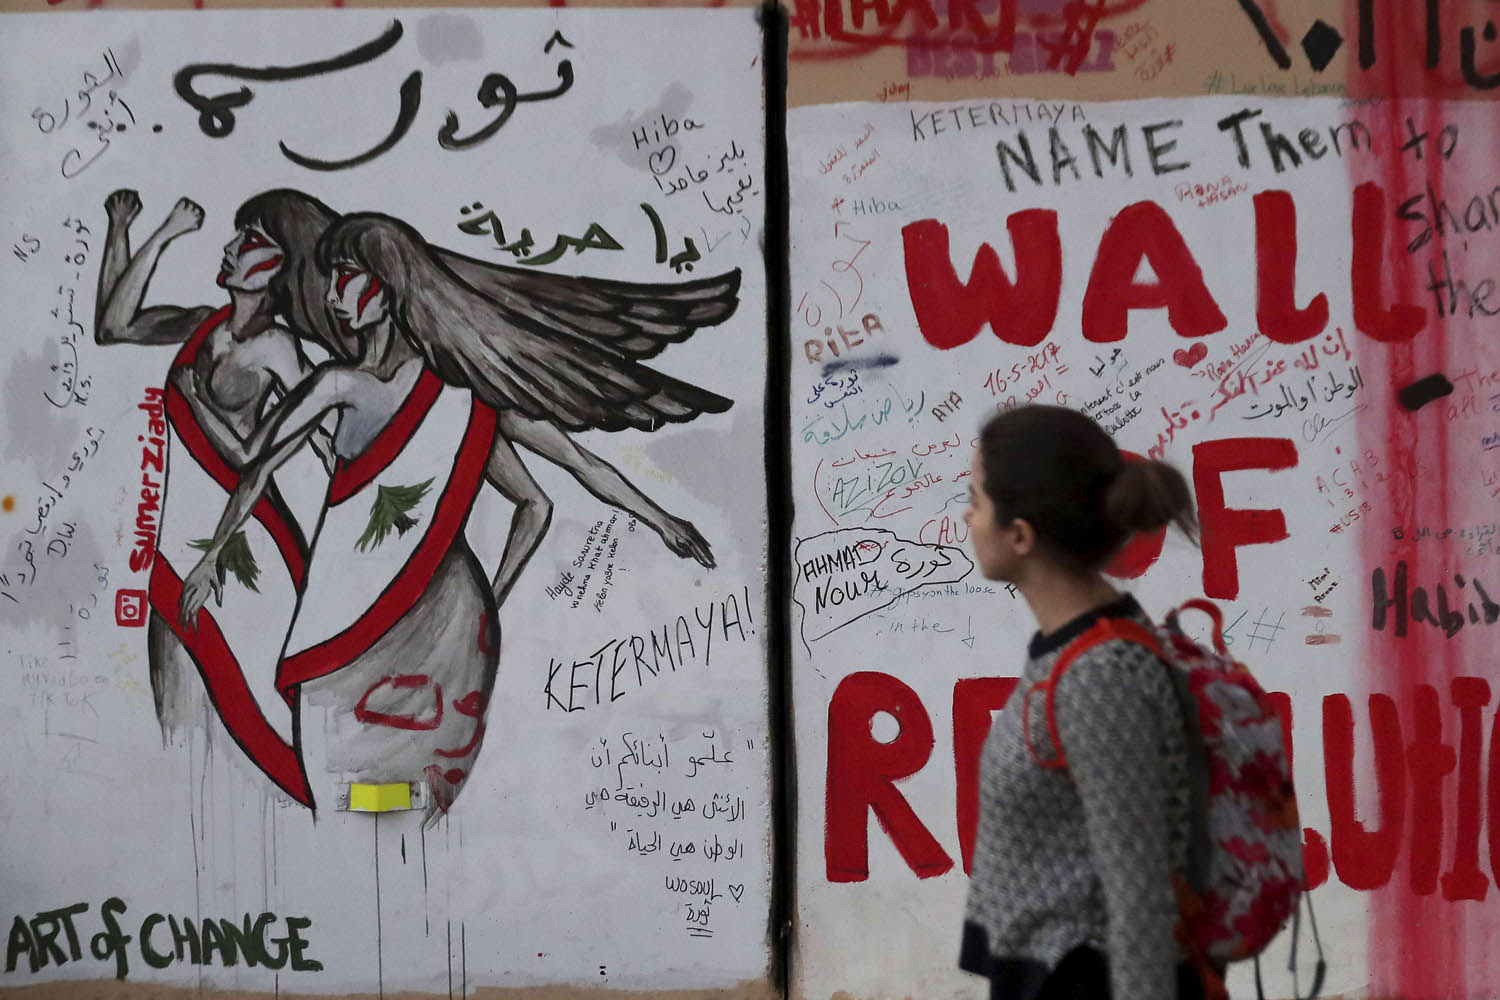 لبنانية تمر بجانب غرافيتي عن الثورة في لبنان